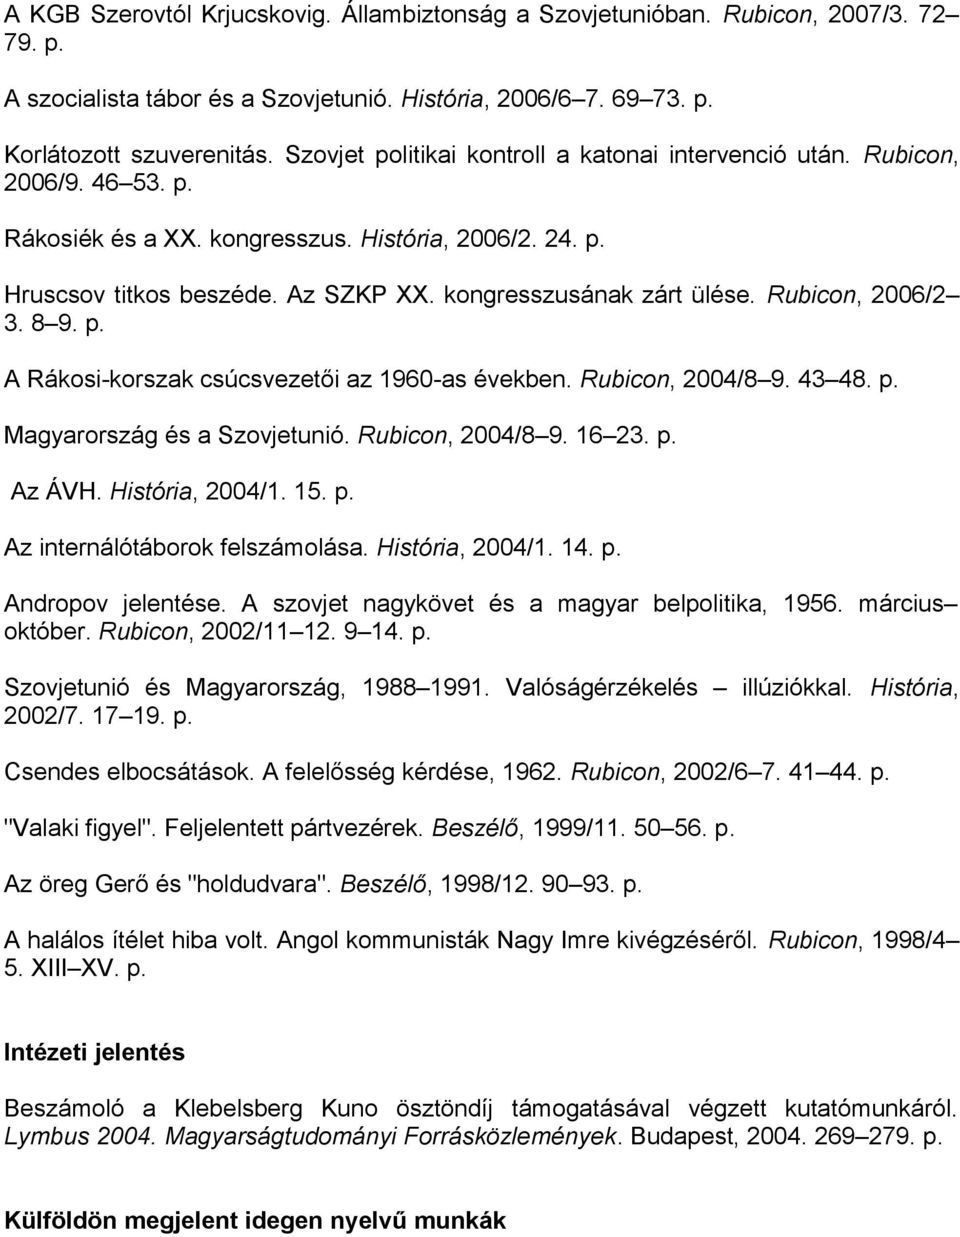 kongresszusának zárt ülése. Rubicon, 2006/2 3. 8 9. p. A Rákosi-korszak csúcsvezetői az 1960-as években. Rubicon, 2004/8 9. 43 48. p. Magyarország és a Szovjetunió. Rubicon, 2004/8 9. 16 23. p. Az ÁVH.